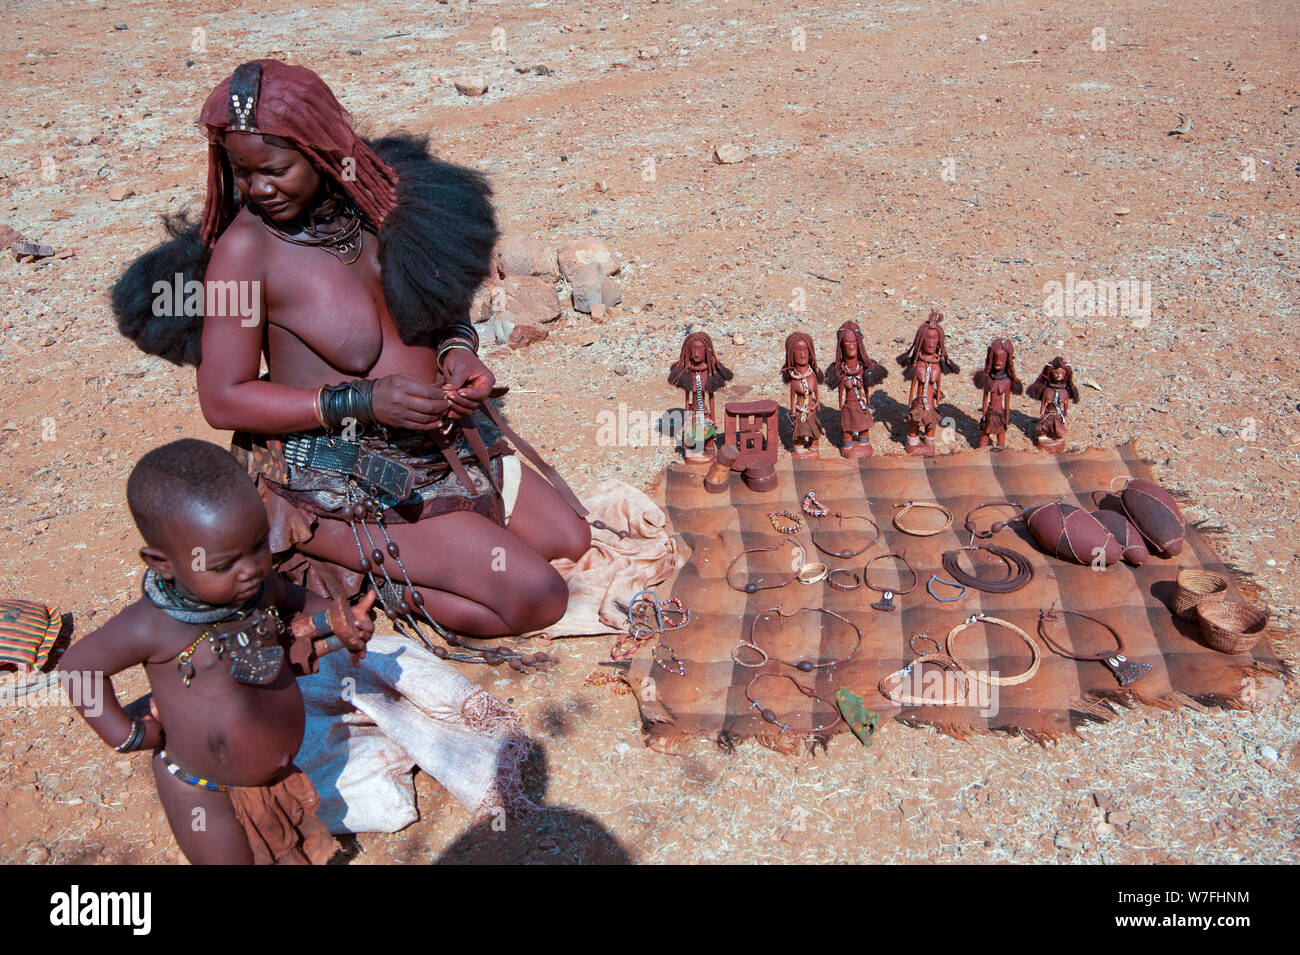 Les femmes Himba vendre de l'artisanat et de bibelots pour touristes dans leur village, Kaokoveld, Namibie, Afrique Banque D'Images